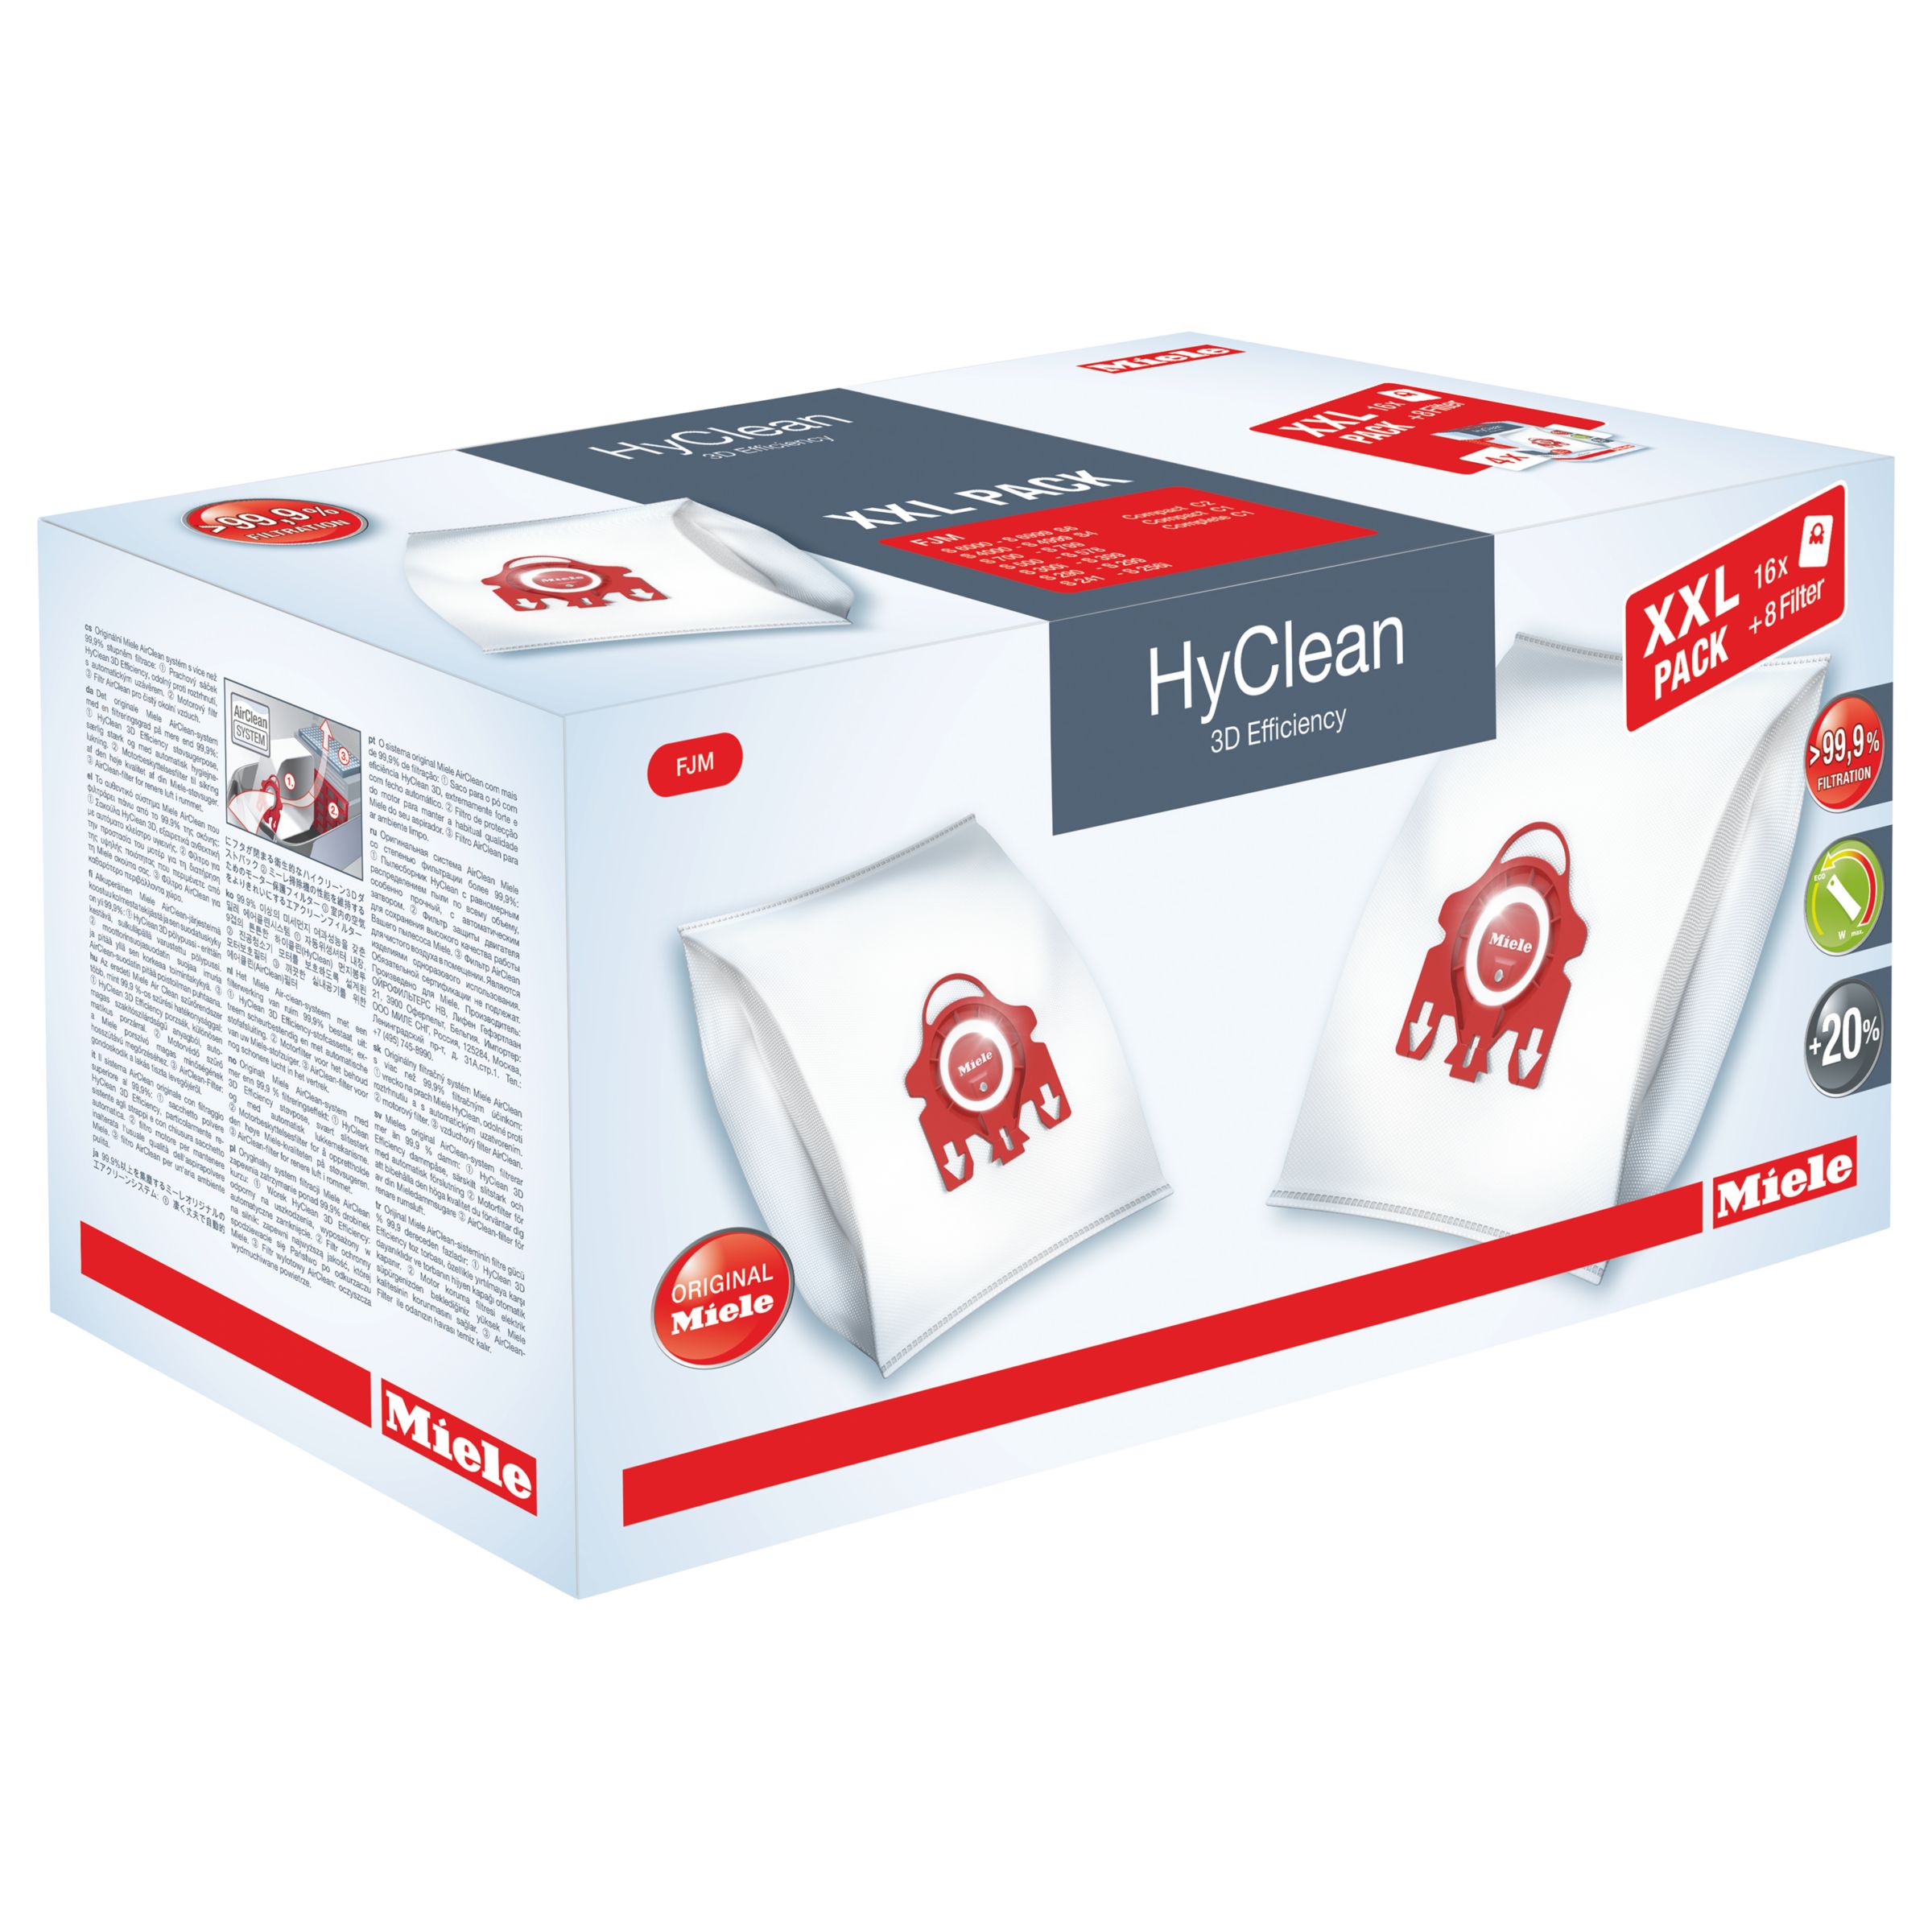 Miele XXL HyClean 3D Efficiency Vacuum Bag 10408420